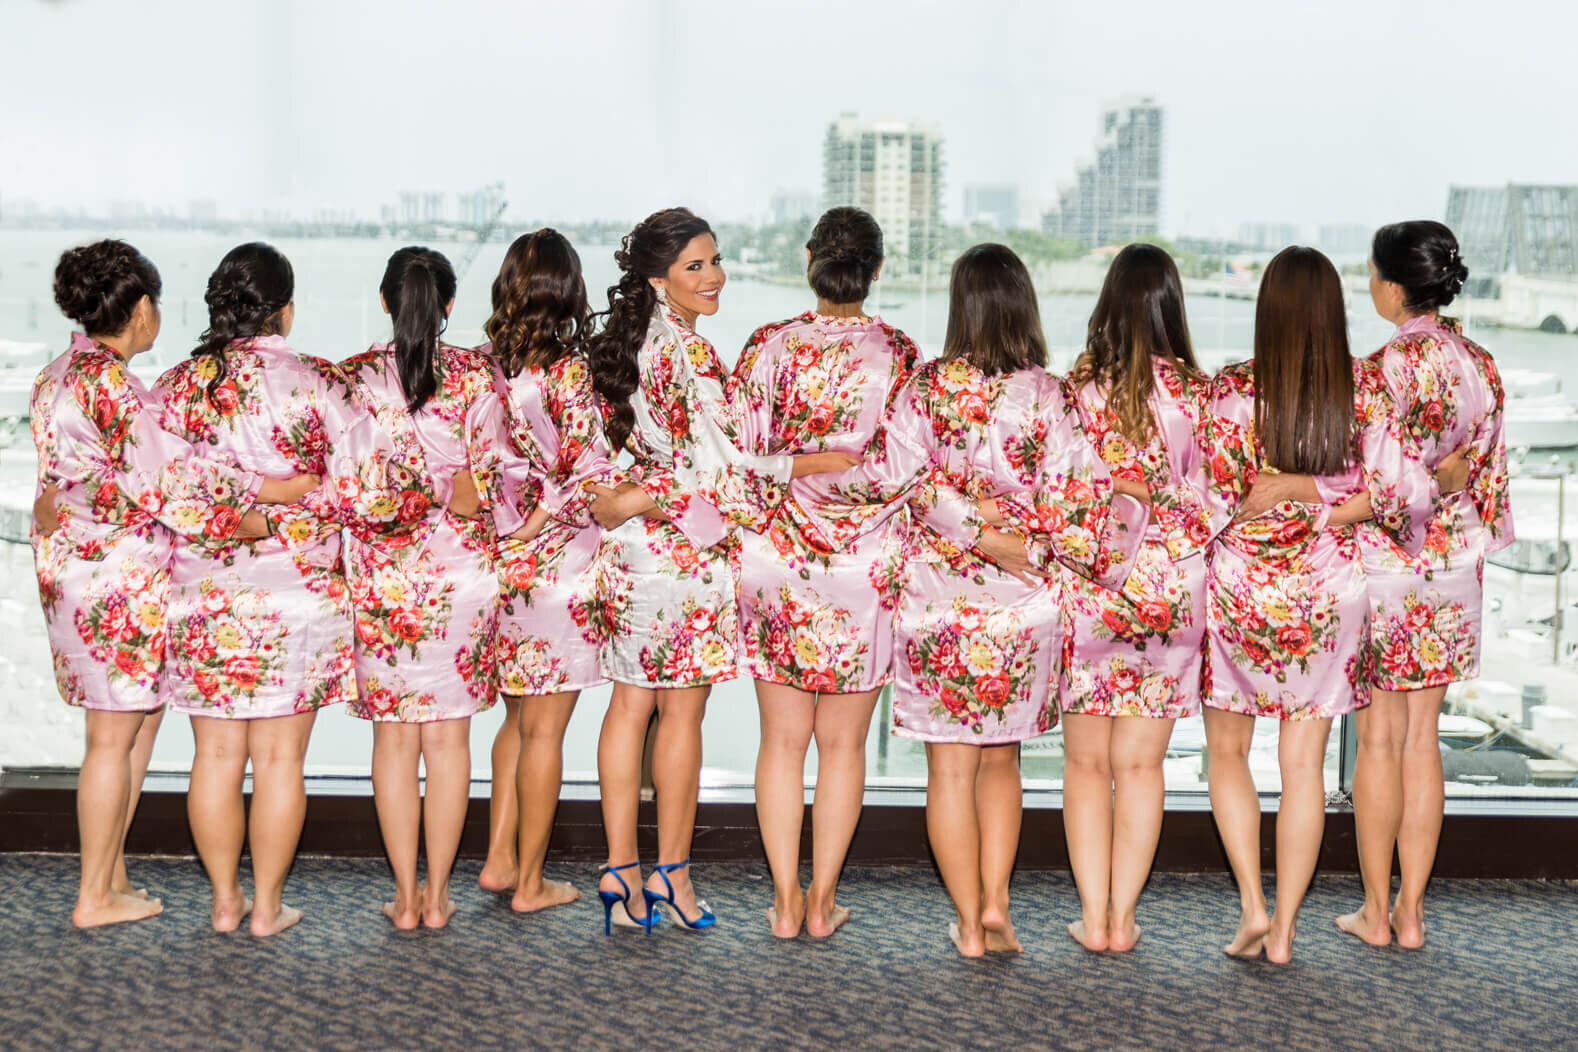 bride-bridesmaids-getting-ready-miami-marriott-hotel- 01